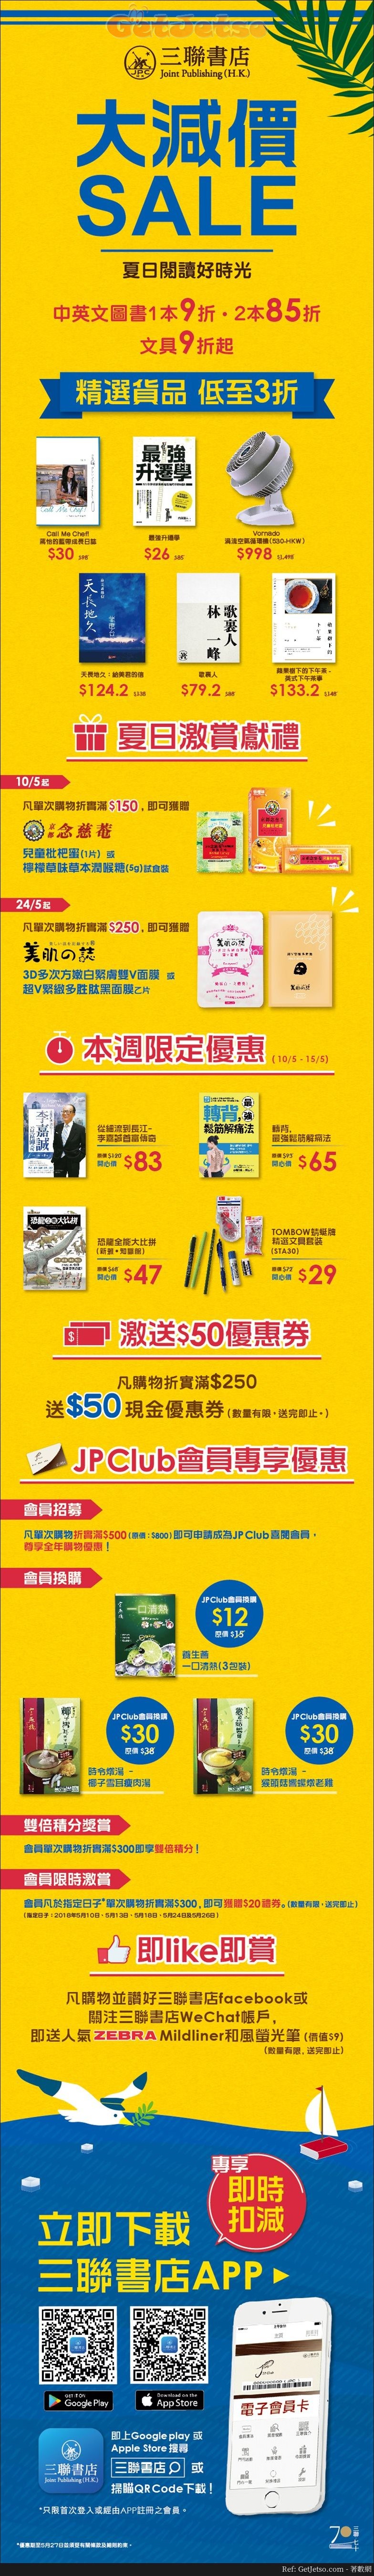 三聯書店低至3折夏季減價優惠(18年5月10-27日)圖片1